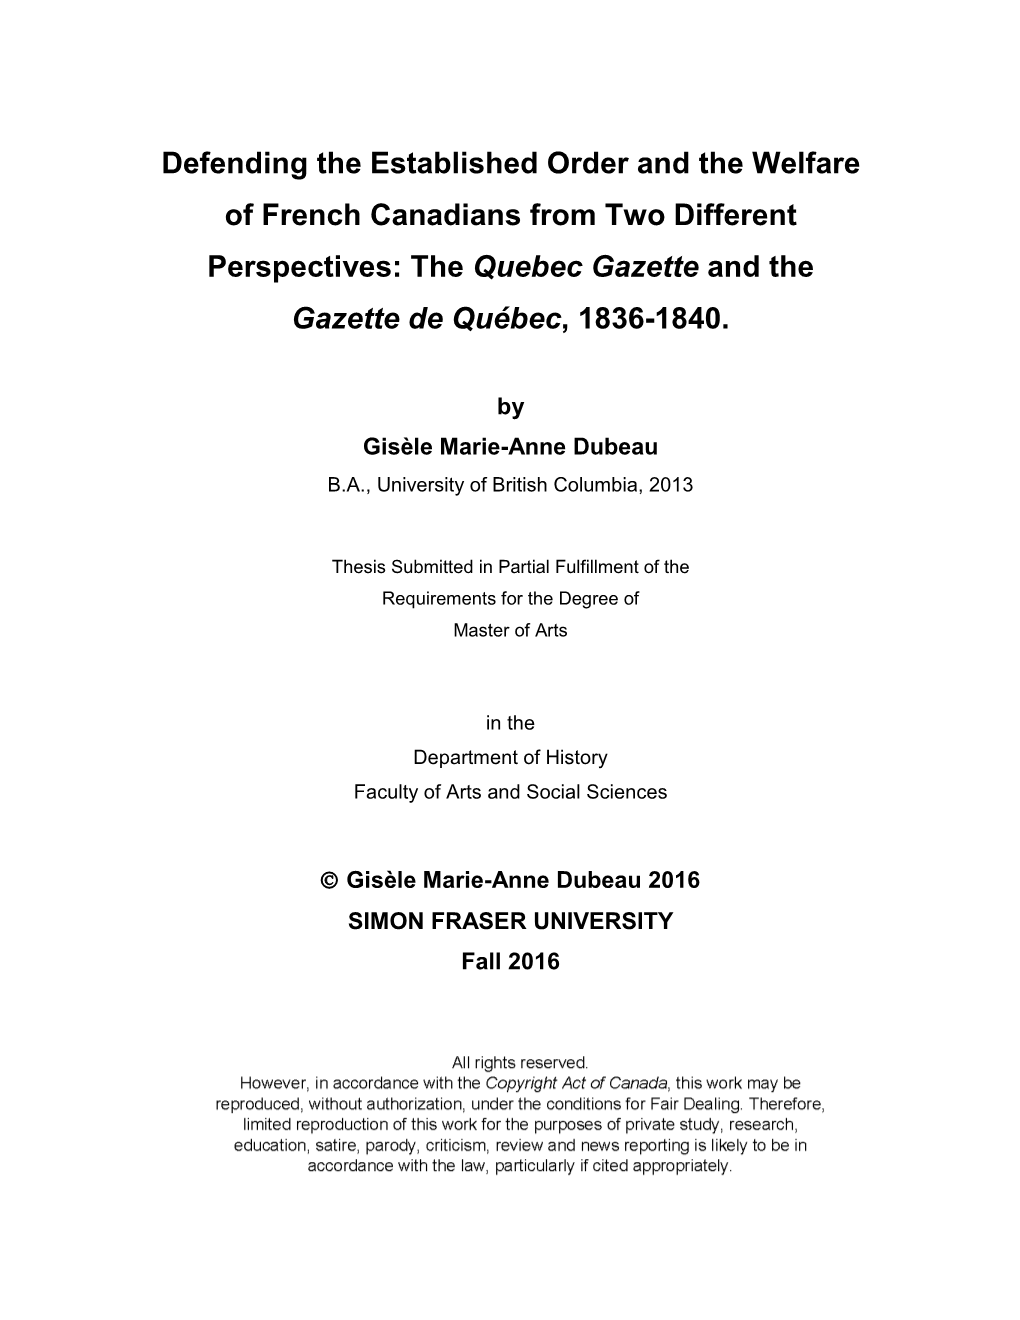 The Quebec Gazette and the Gazette De Québec, 1836-1840